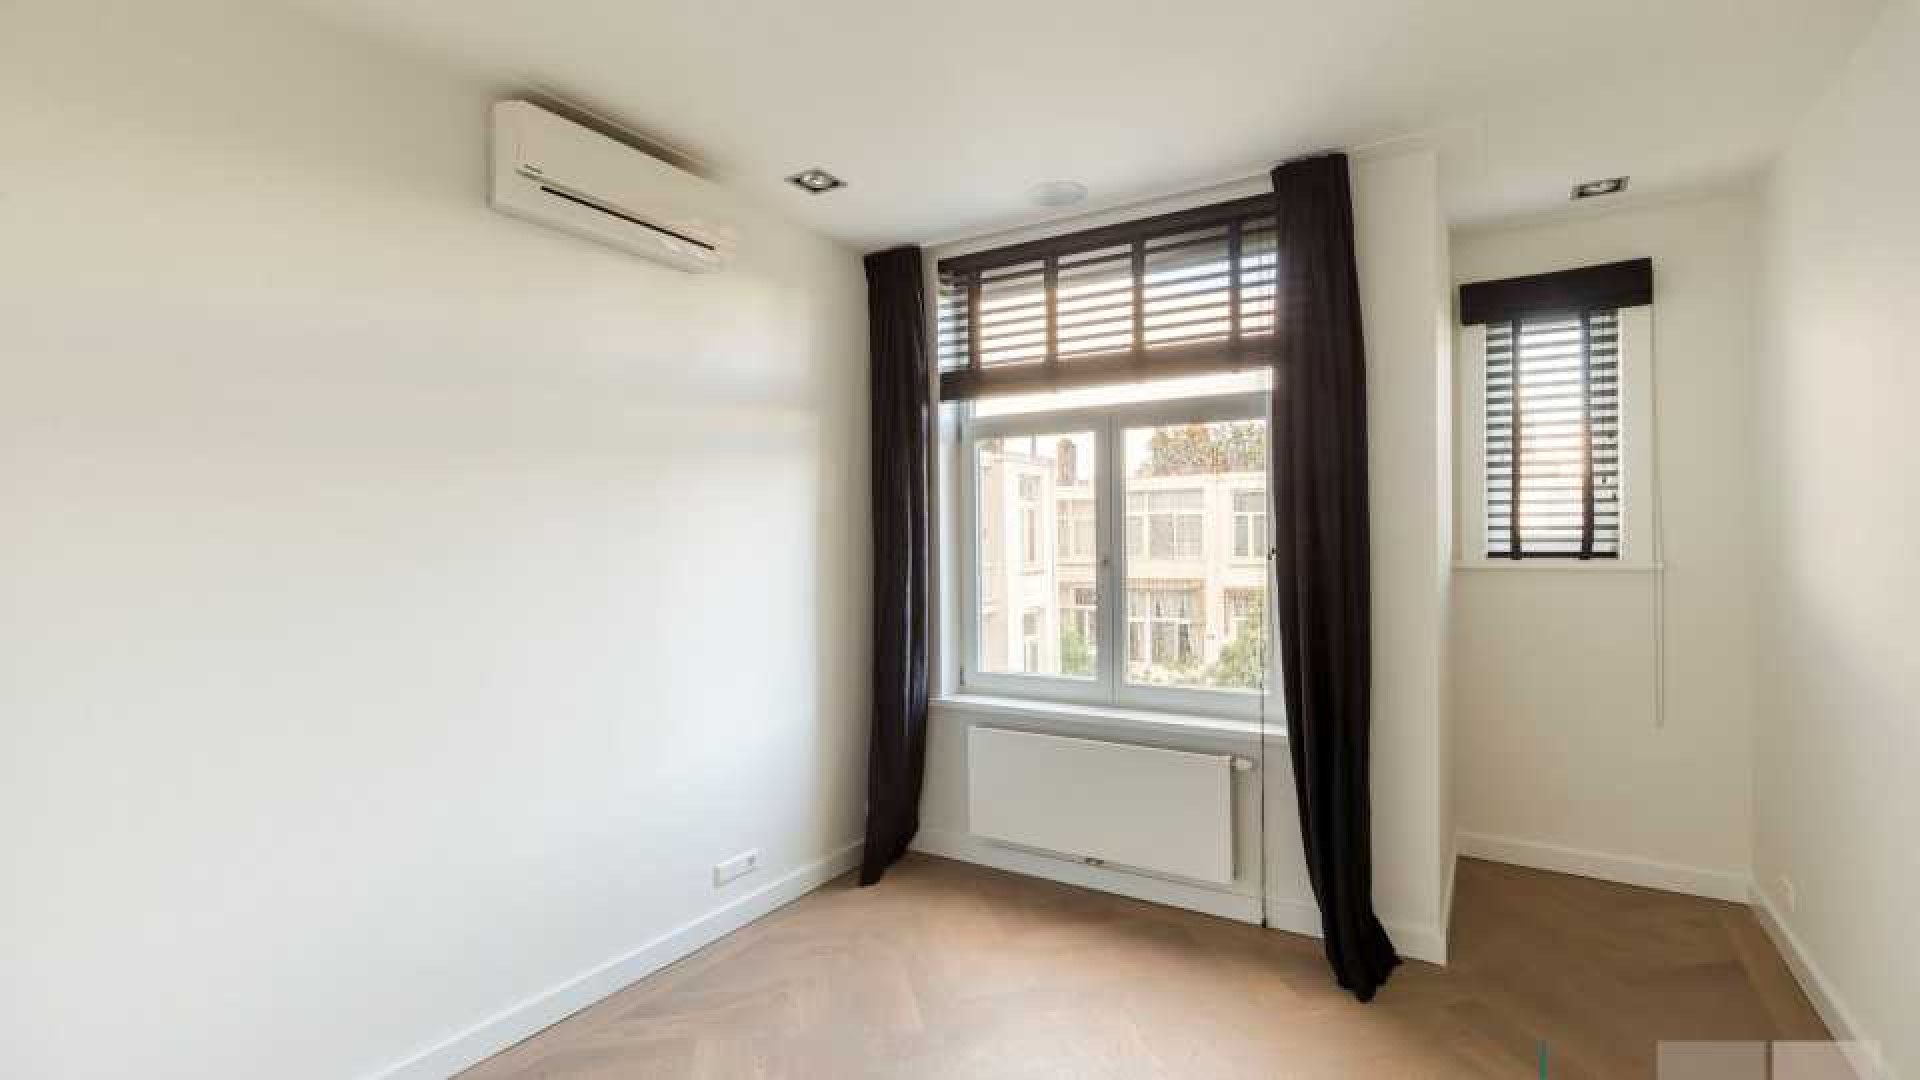 Leco van Zadelhoff zet zijn luxe appartement in Amsterdam Zuid te koop. Zie foto's 15